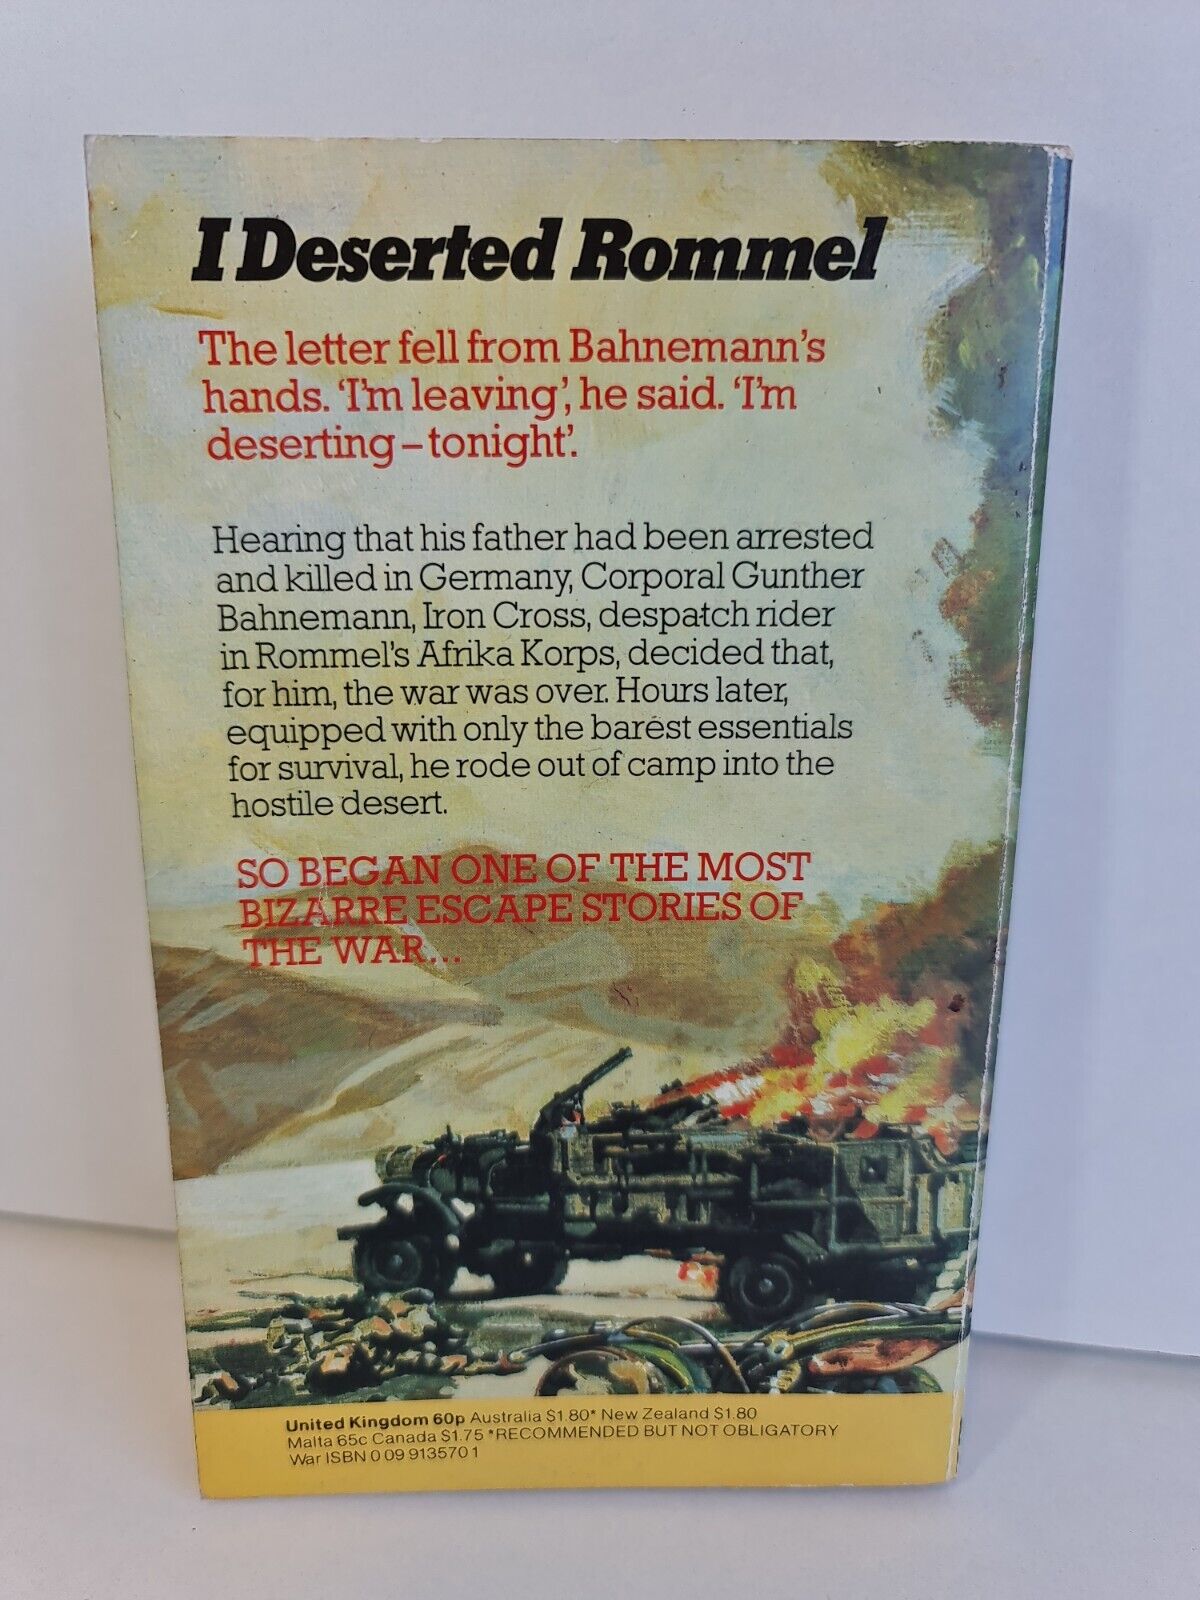 I Deserted Rommel by Gunther Bahnemann (1976)